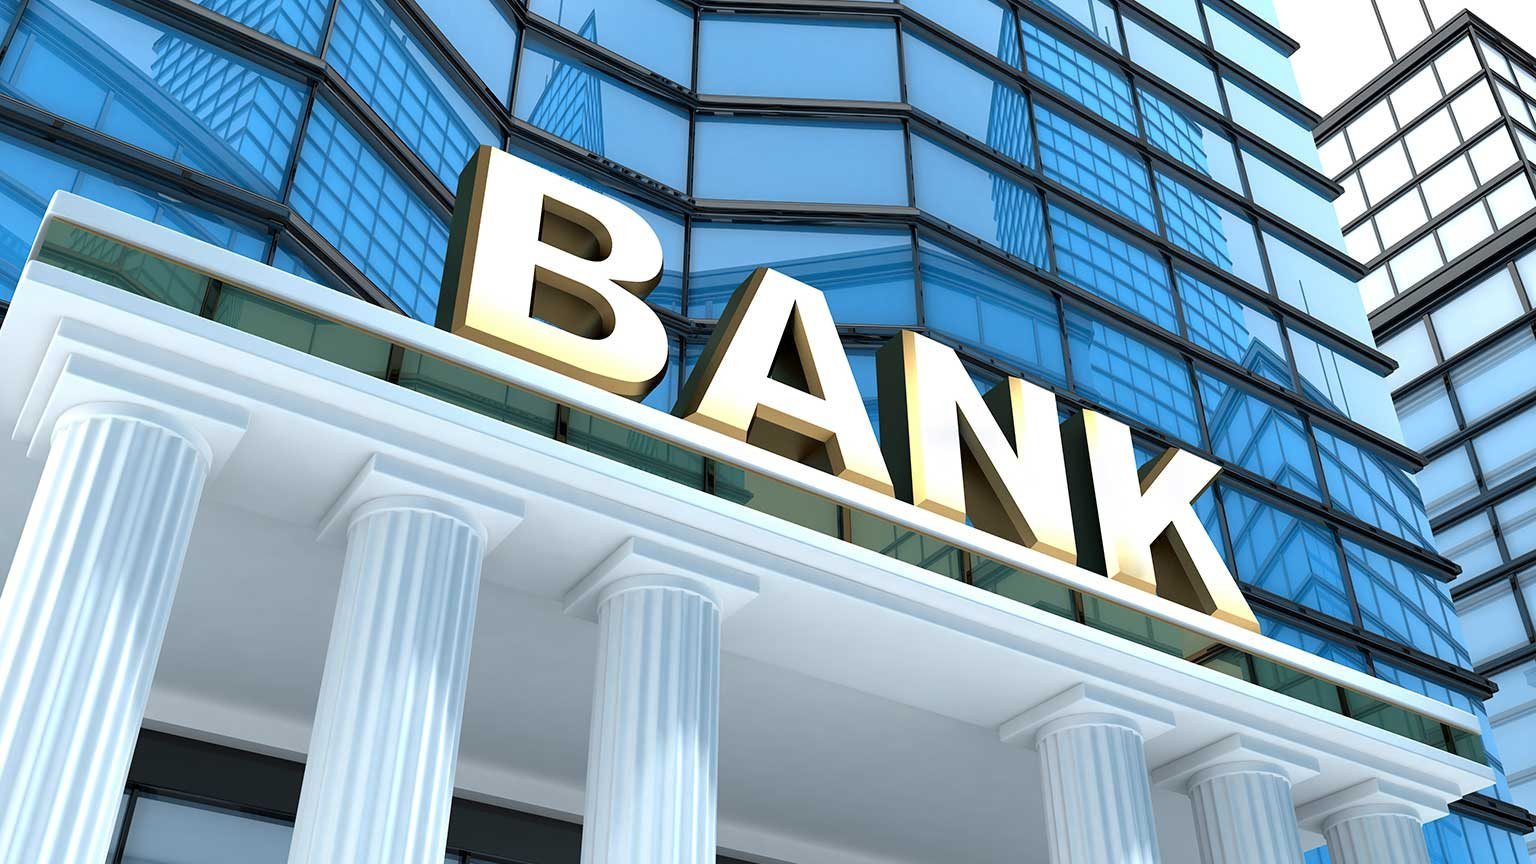 Trong khi nhiều ngân hàng cắt giảm mạnh nhân sự, một ngân hàng tư nhân vẫn tuyển thêm hàng nghìn vị trí - Ảnh 1.